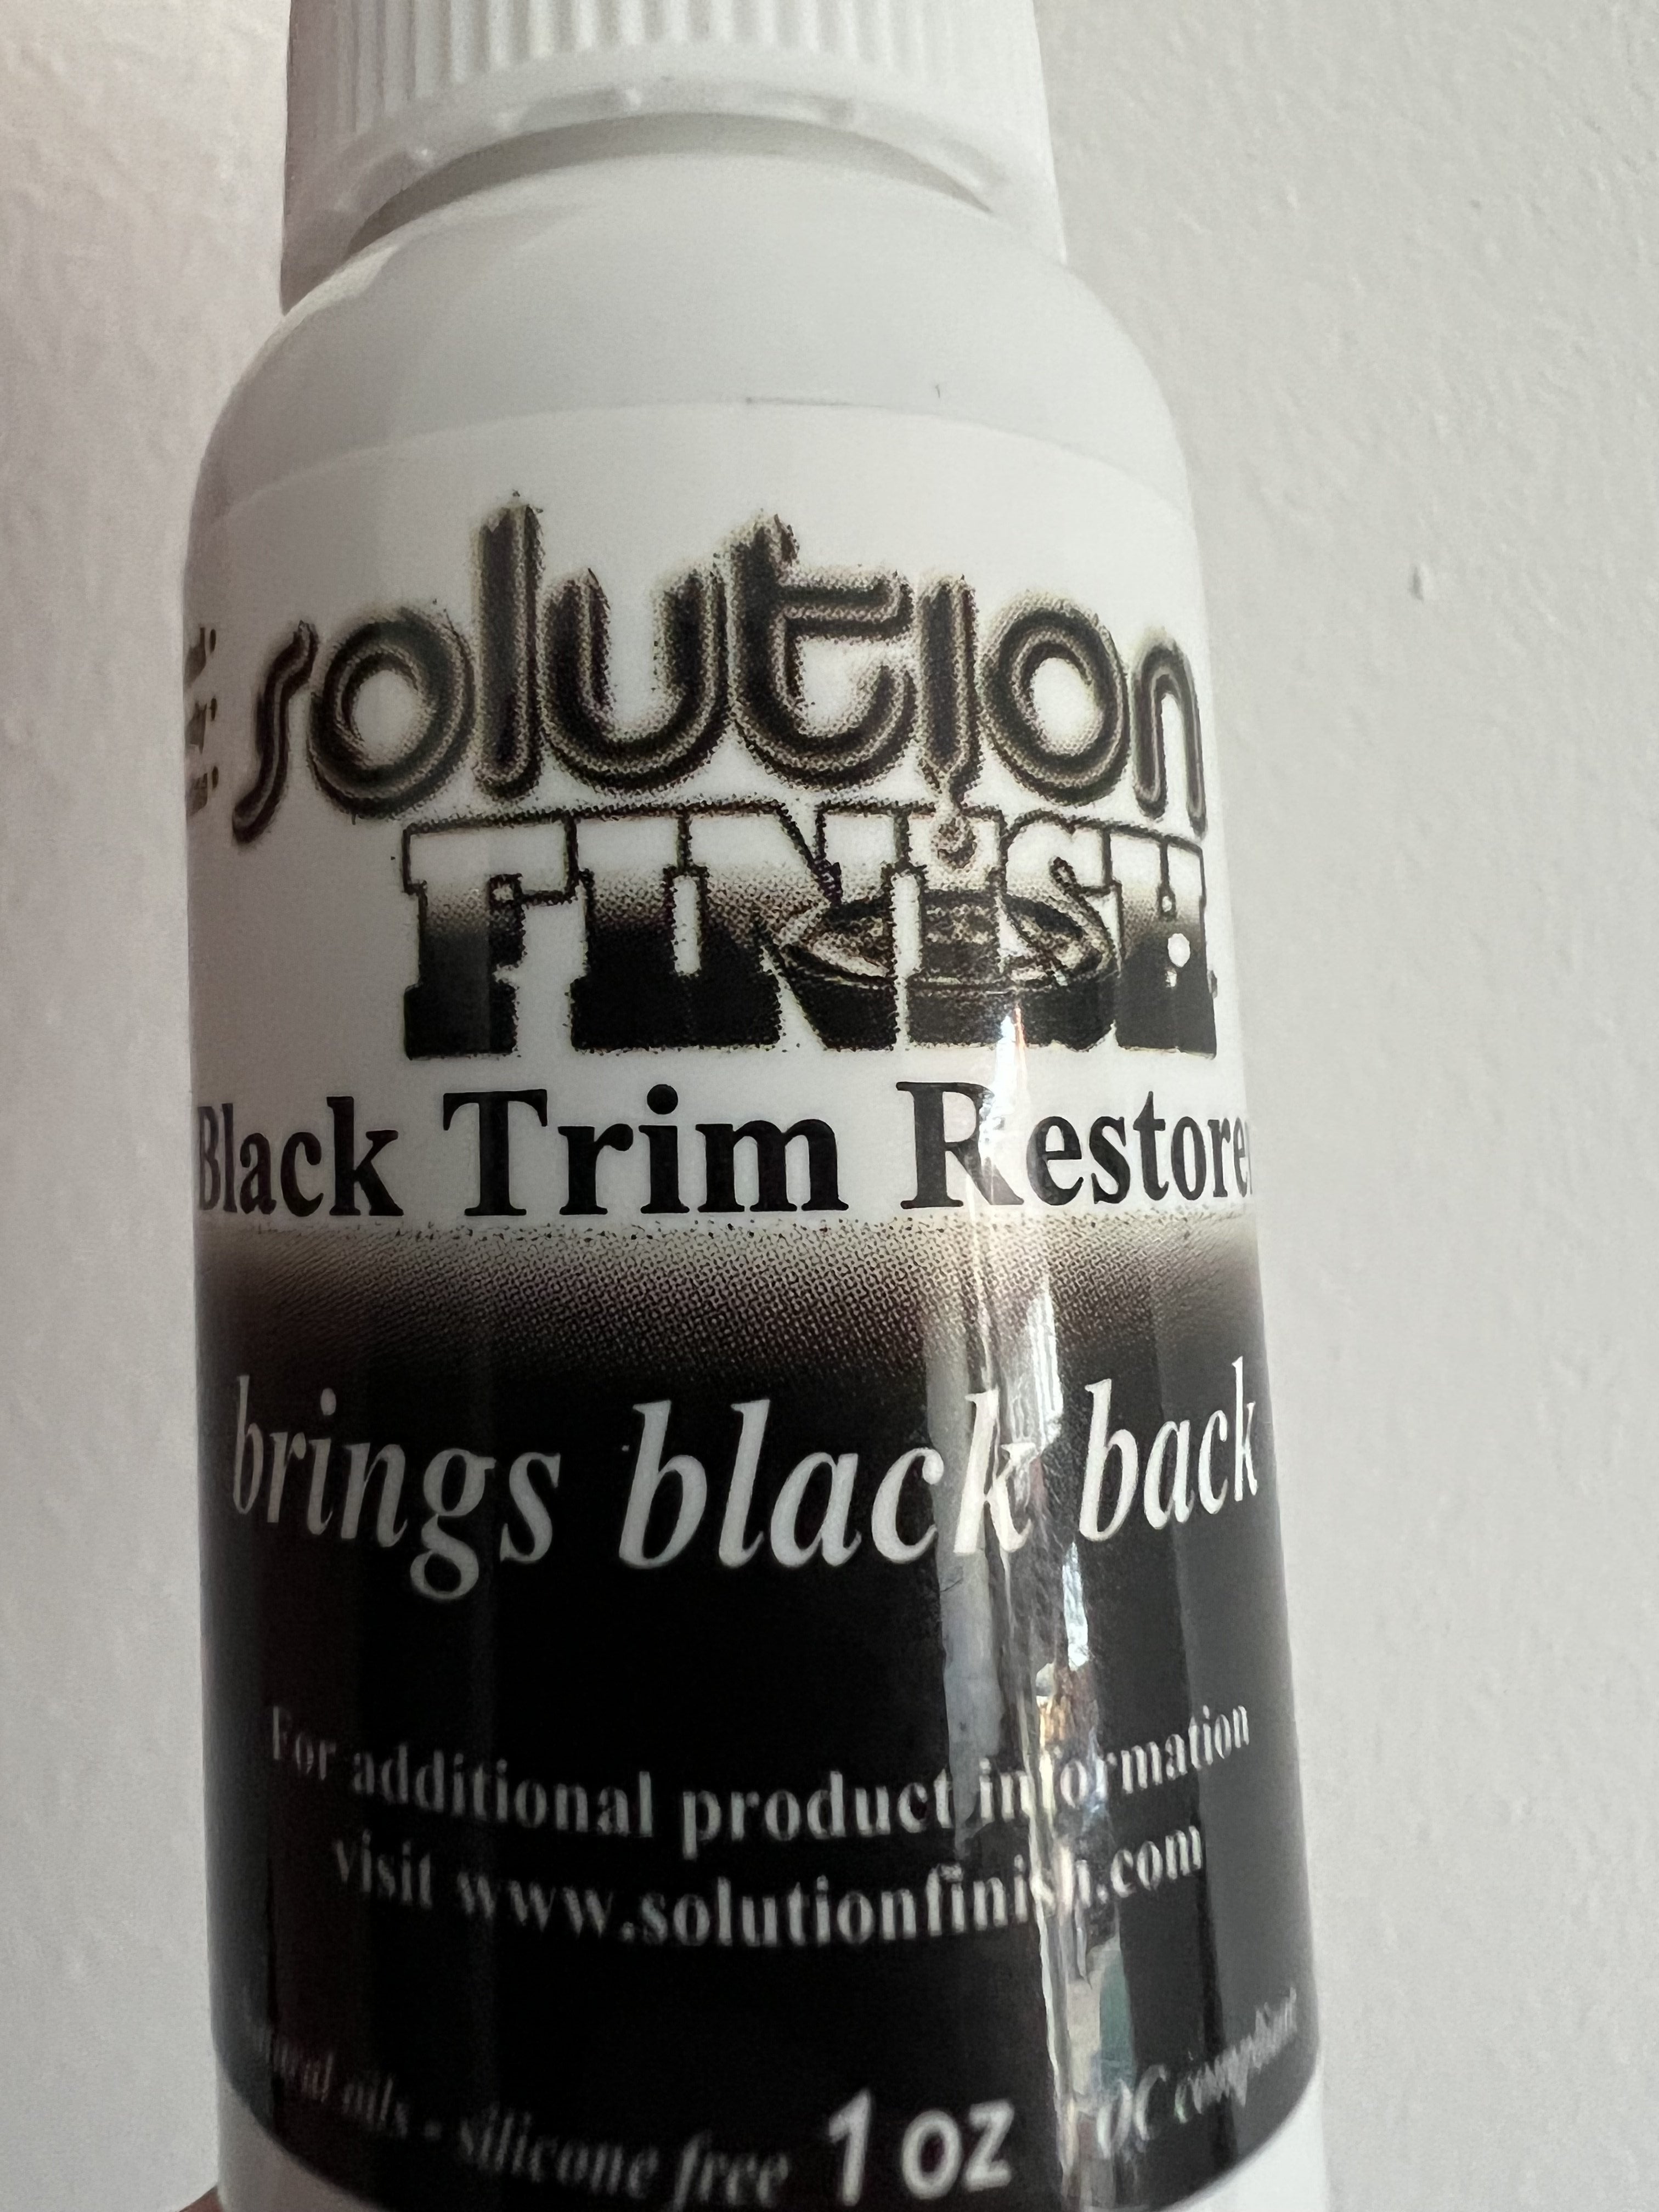 Solution Finish Buy 1 Get 1 Free Trim Restorer - 1 oz Black